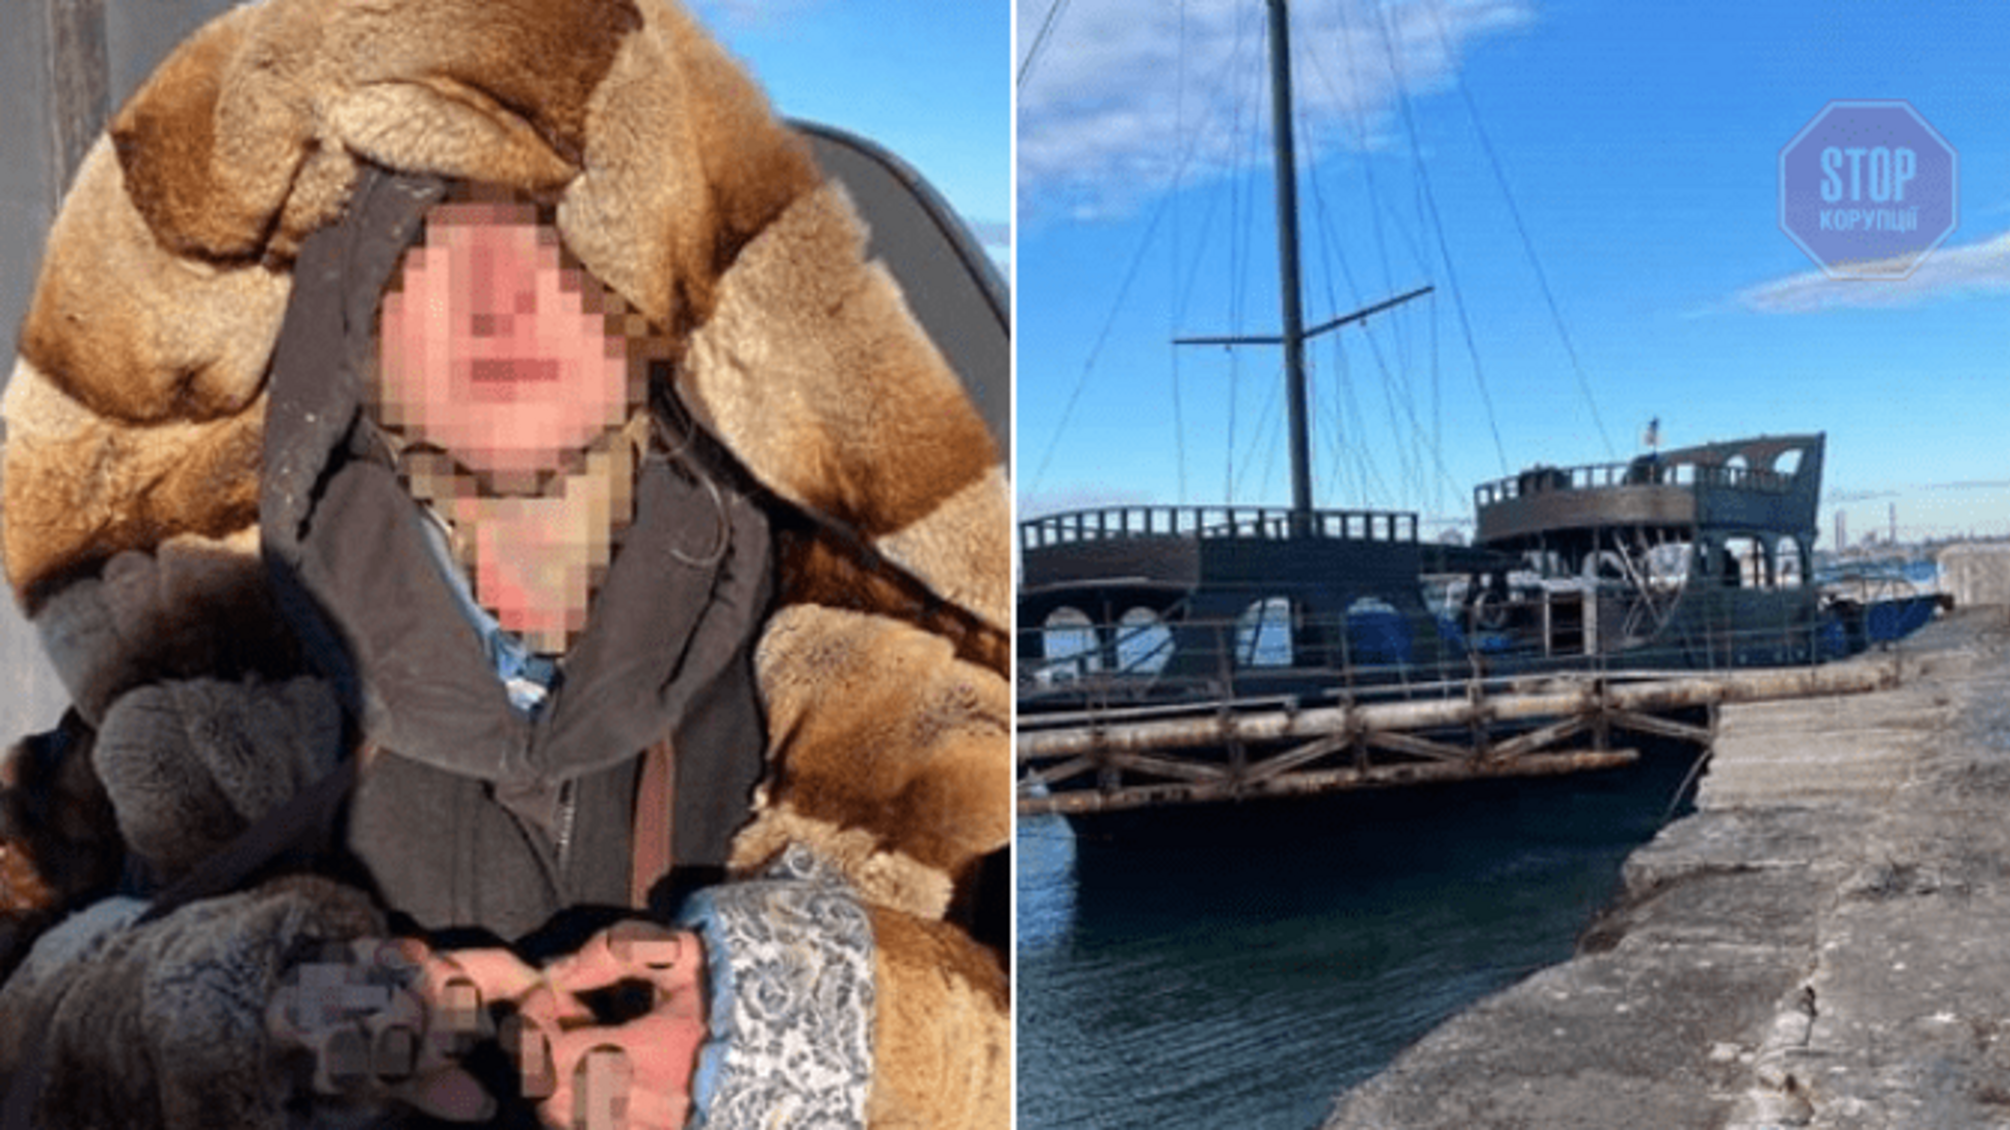 Намагалася потрапити до Миколаєва: в Одесі жінка під наркотиками викрала яхту (фото)